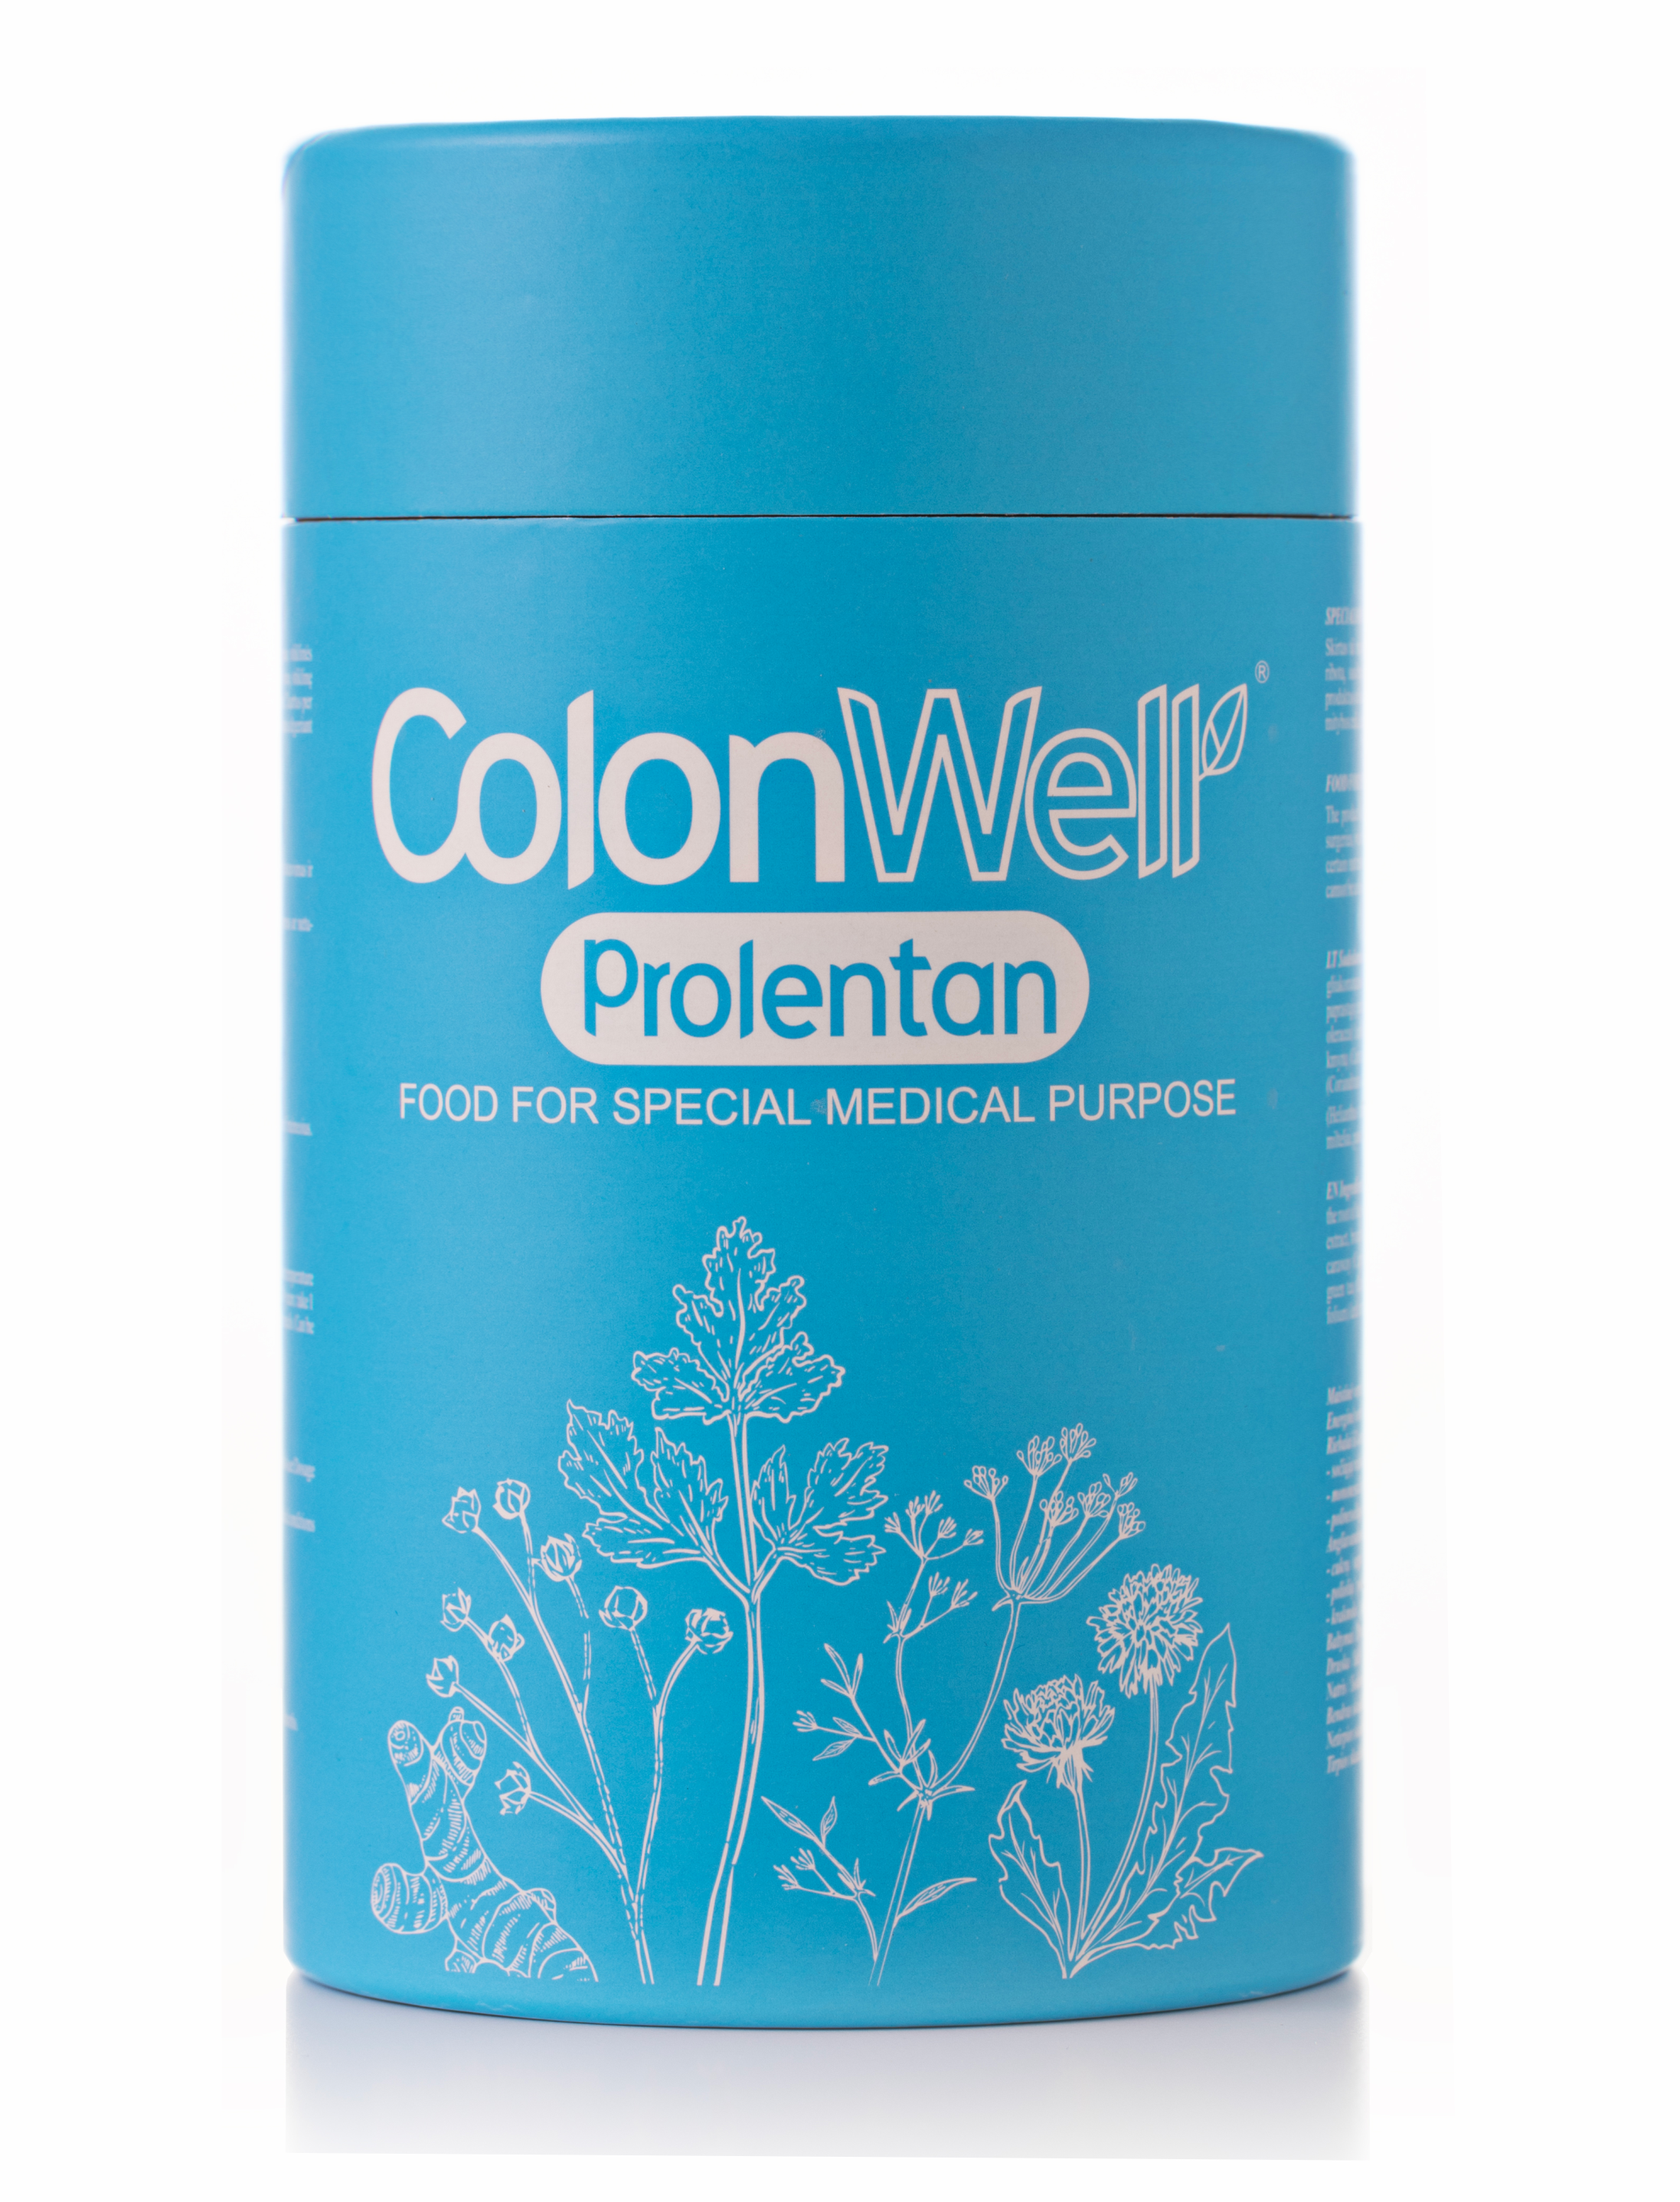 Colonwell.lt produktas - ColonWell Prolentan - medicininės paskirties maisto produktas onkologiniams ligoniams ir sunkiai sergantiems 350g.